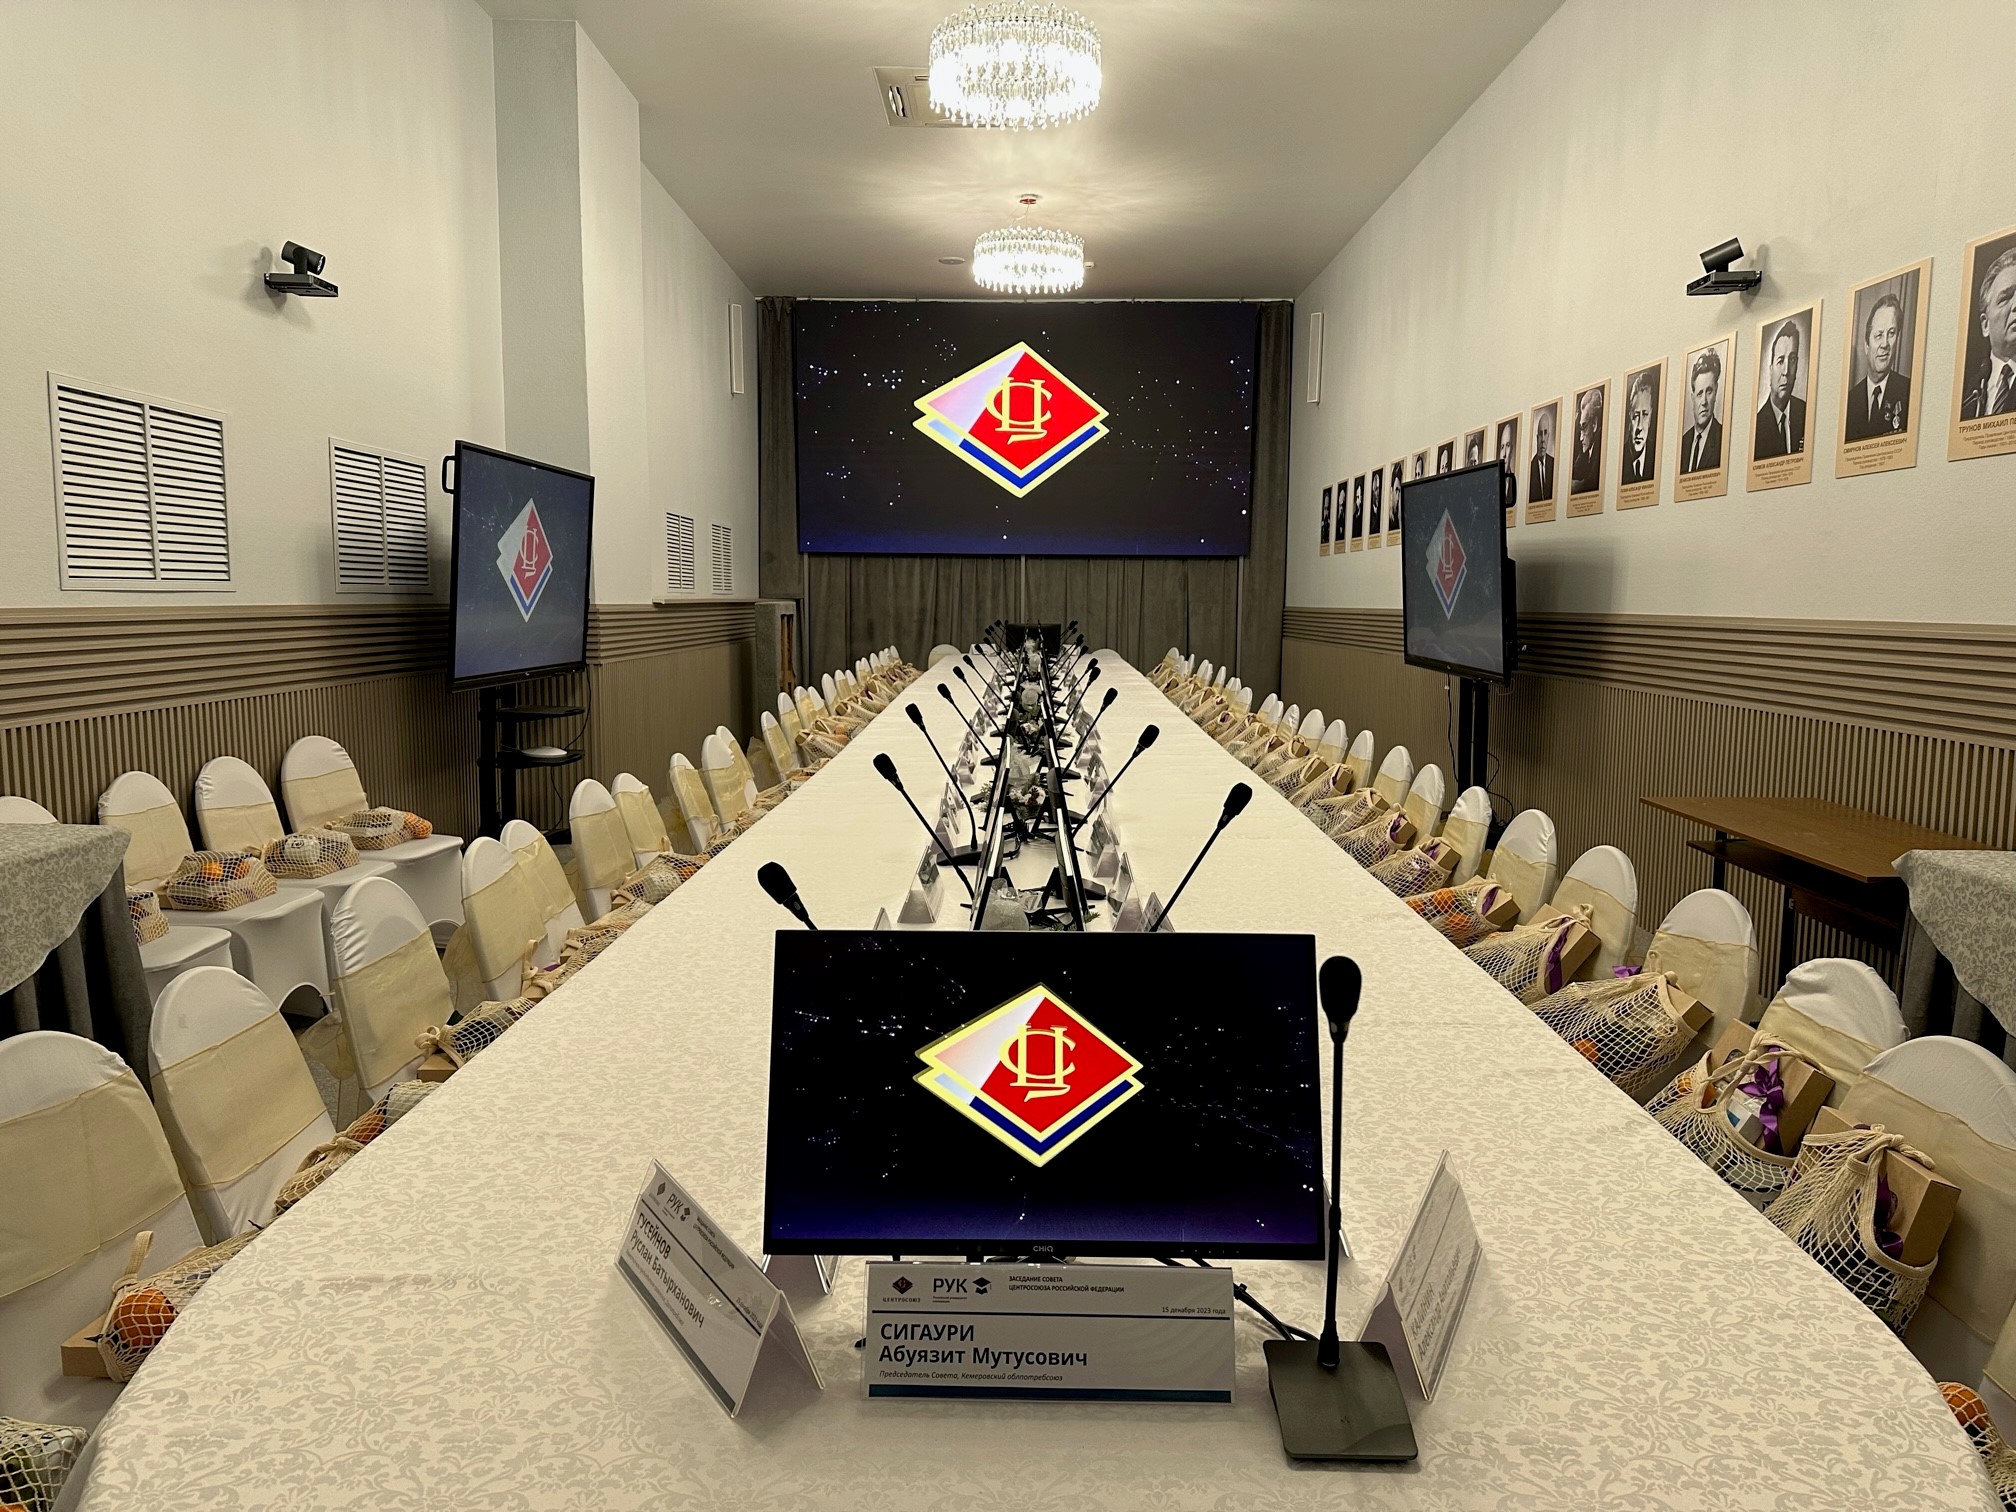 X-Com построила систему видеоконференцсвязи в Российском университете кооперации
